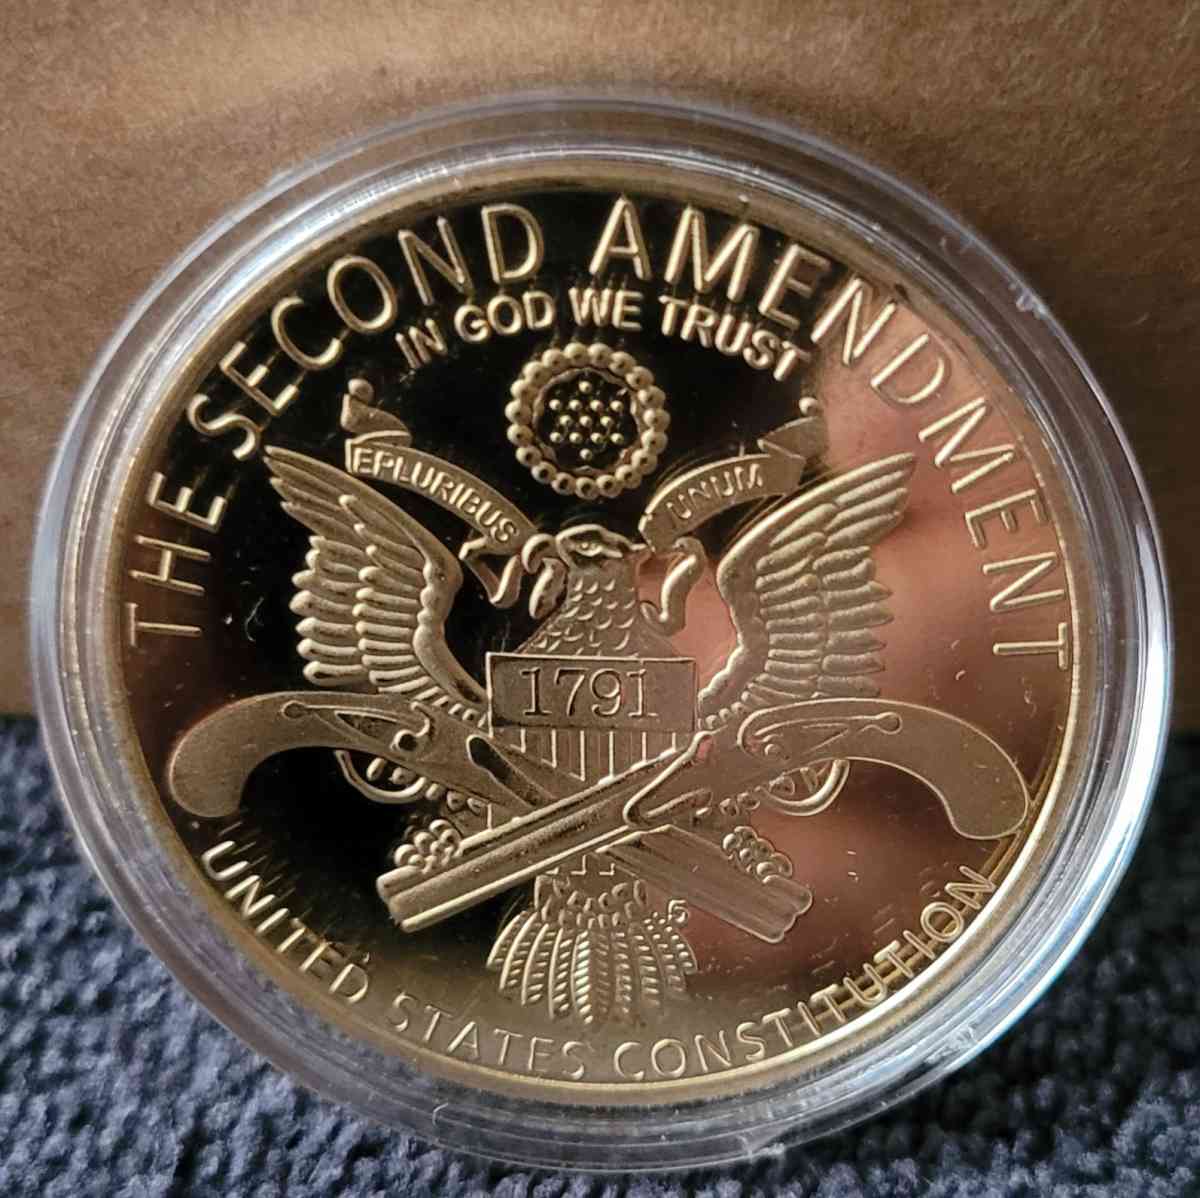 Second Ammendment Coin